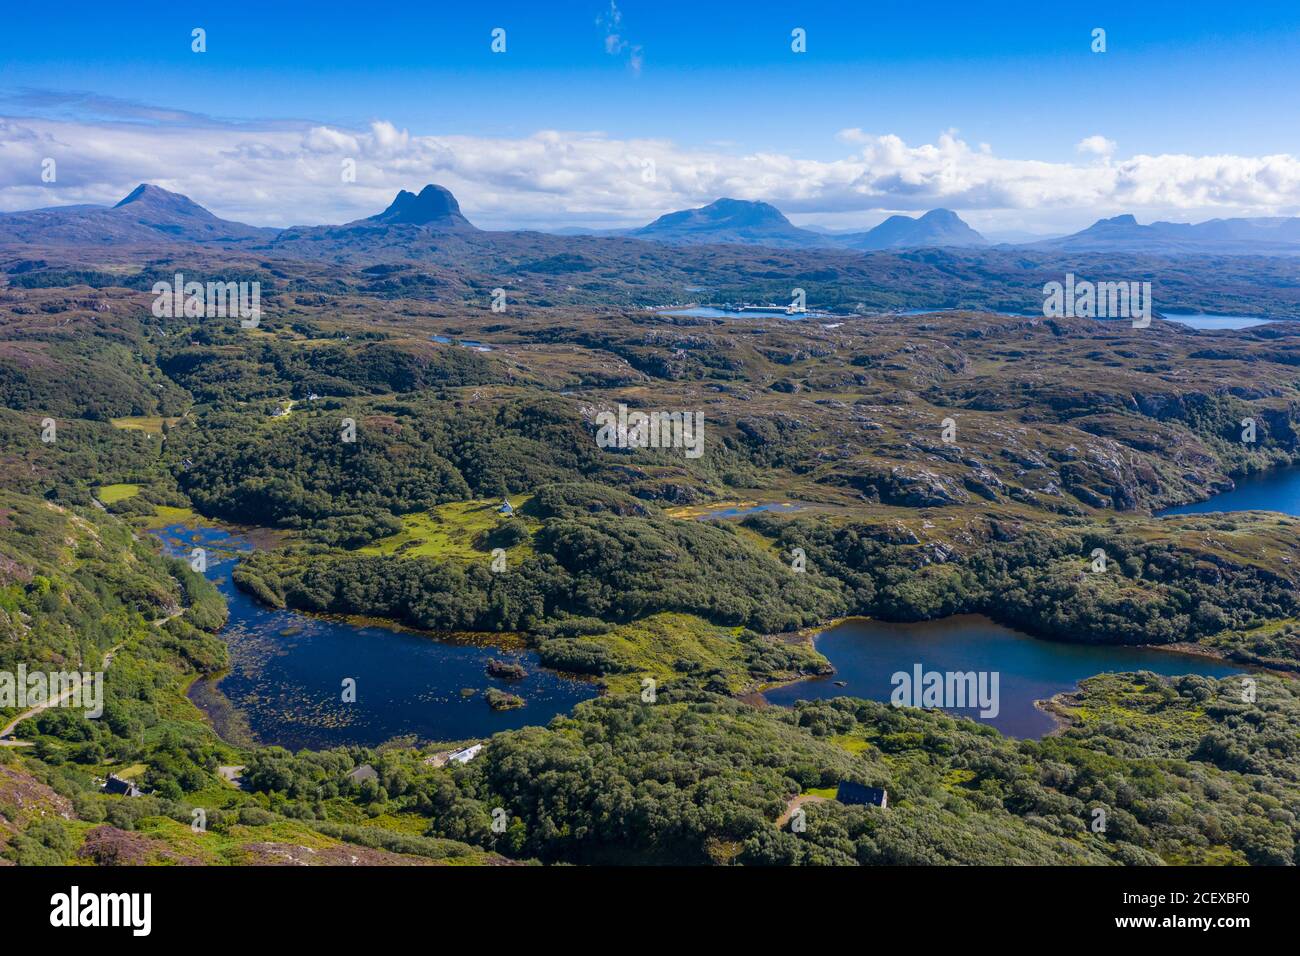 Vue aérienne sur les montagnes de la région d'Assynt Coigach, dans les Highlands écossais, en Écosse, au Royaume-Uni Banque D'Images